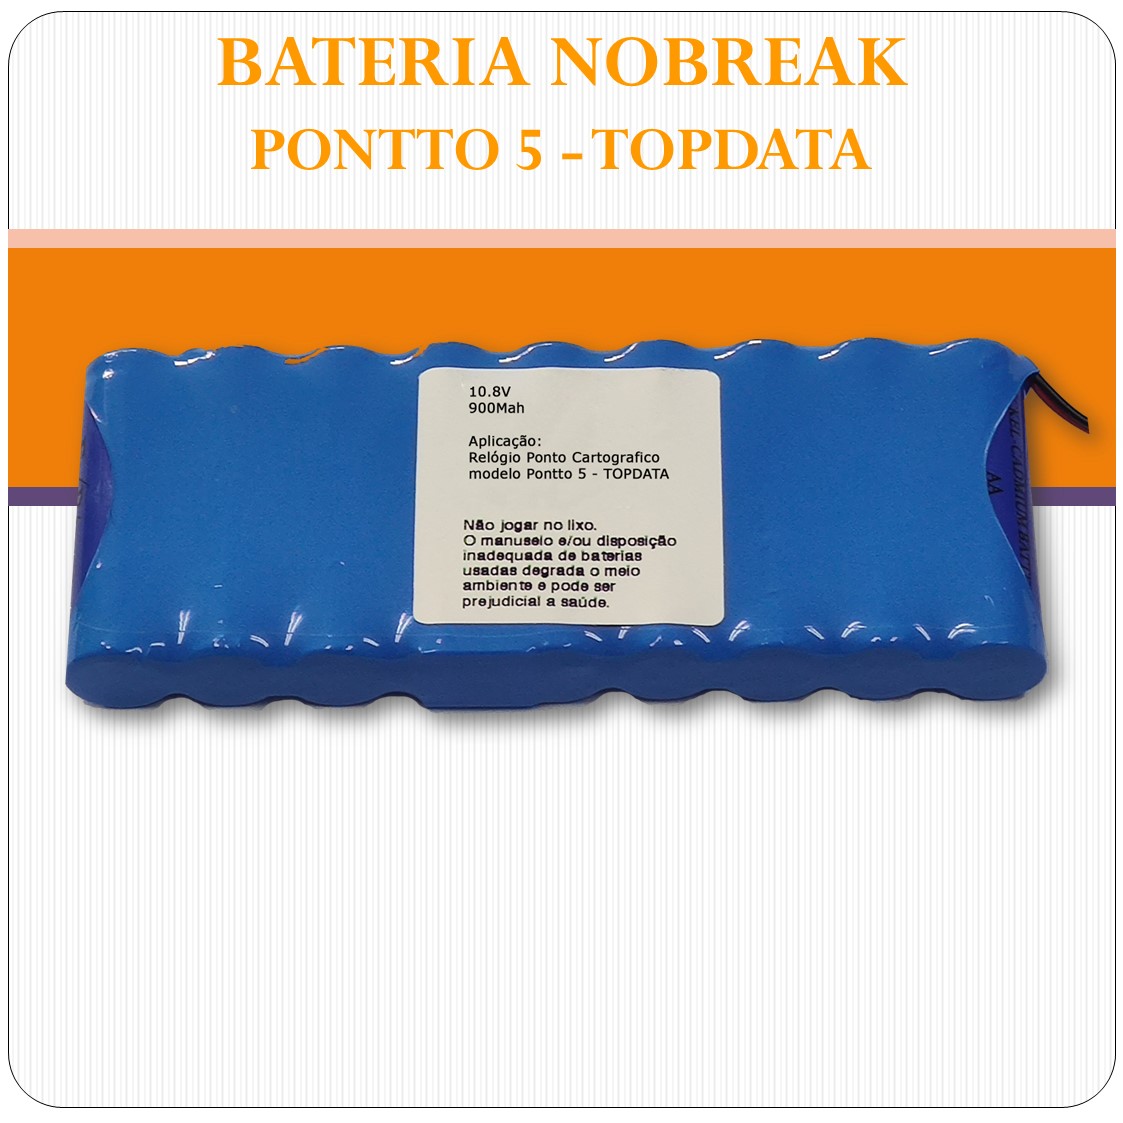 Bateria Nobreak  Pontto 5 - Topdata